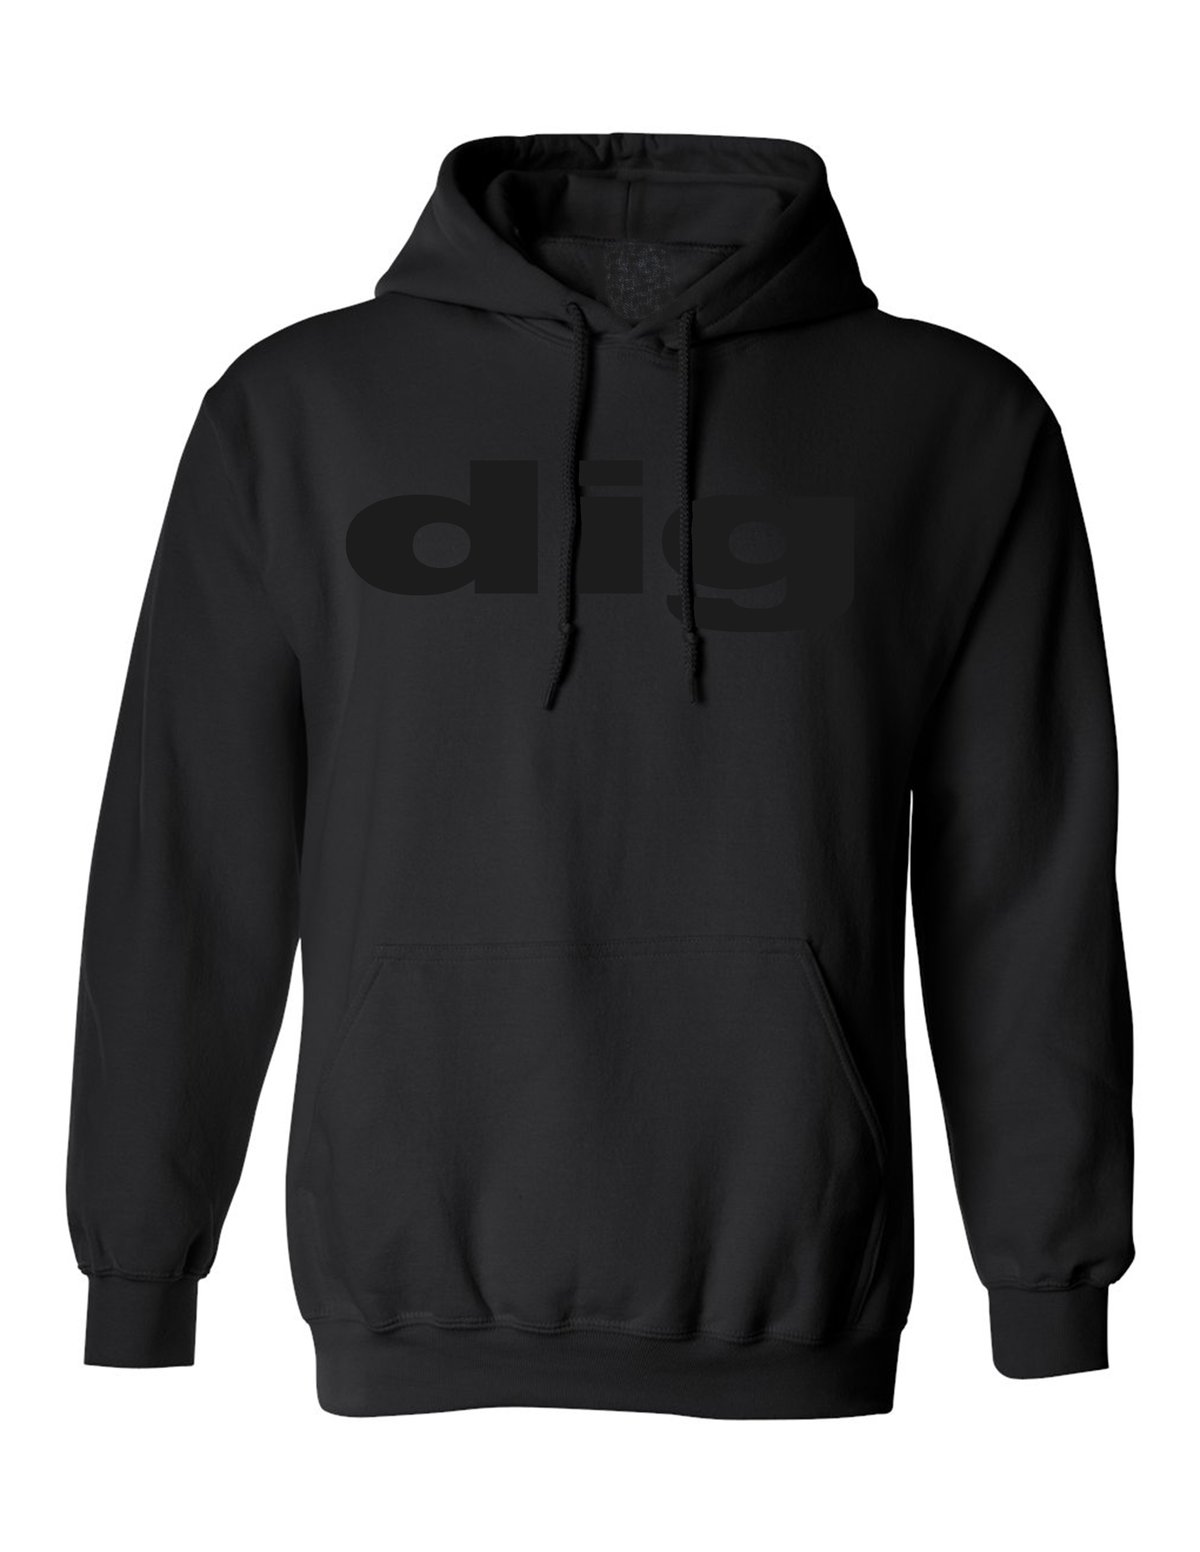 Image of official - dig - unisex "dig" logo black on black pullover hoodie